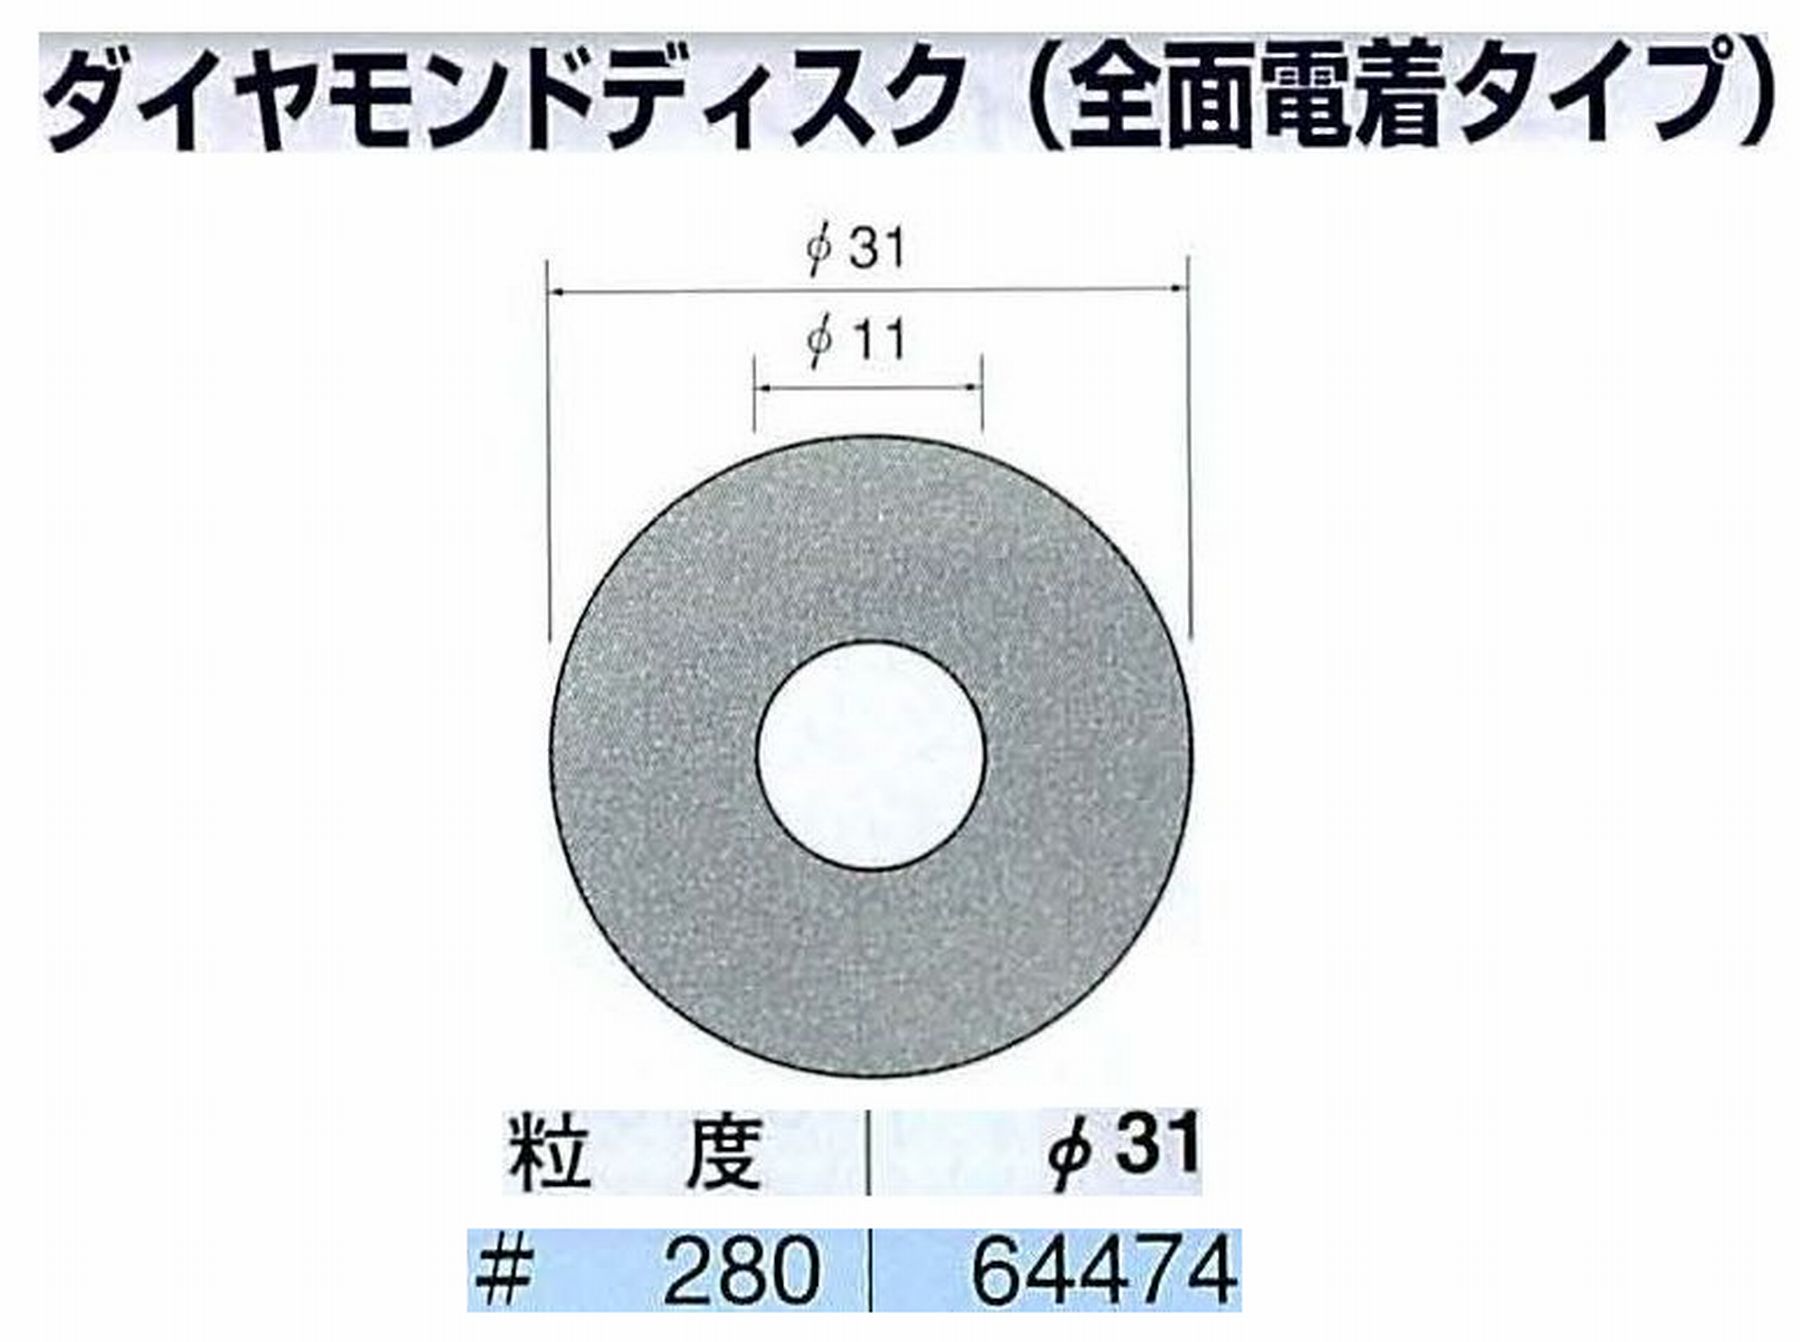 ナカニシ/NAKANISHI アングルグラインダ(電動・エアー) アングルアタッチメント専用工具 ダイヤモンドディスク(全面電着タイプ) 64474